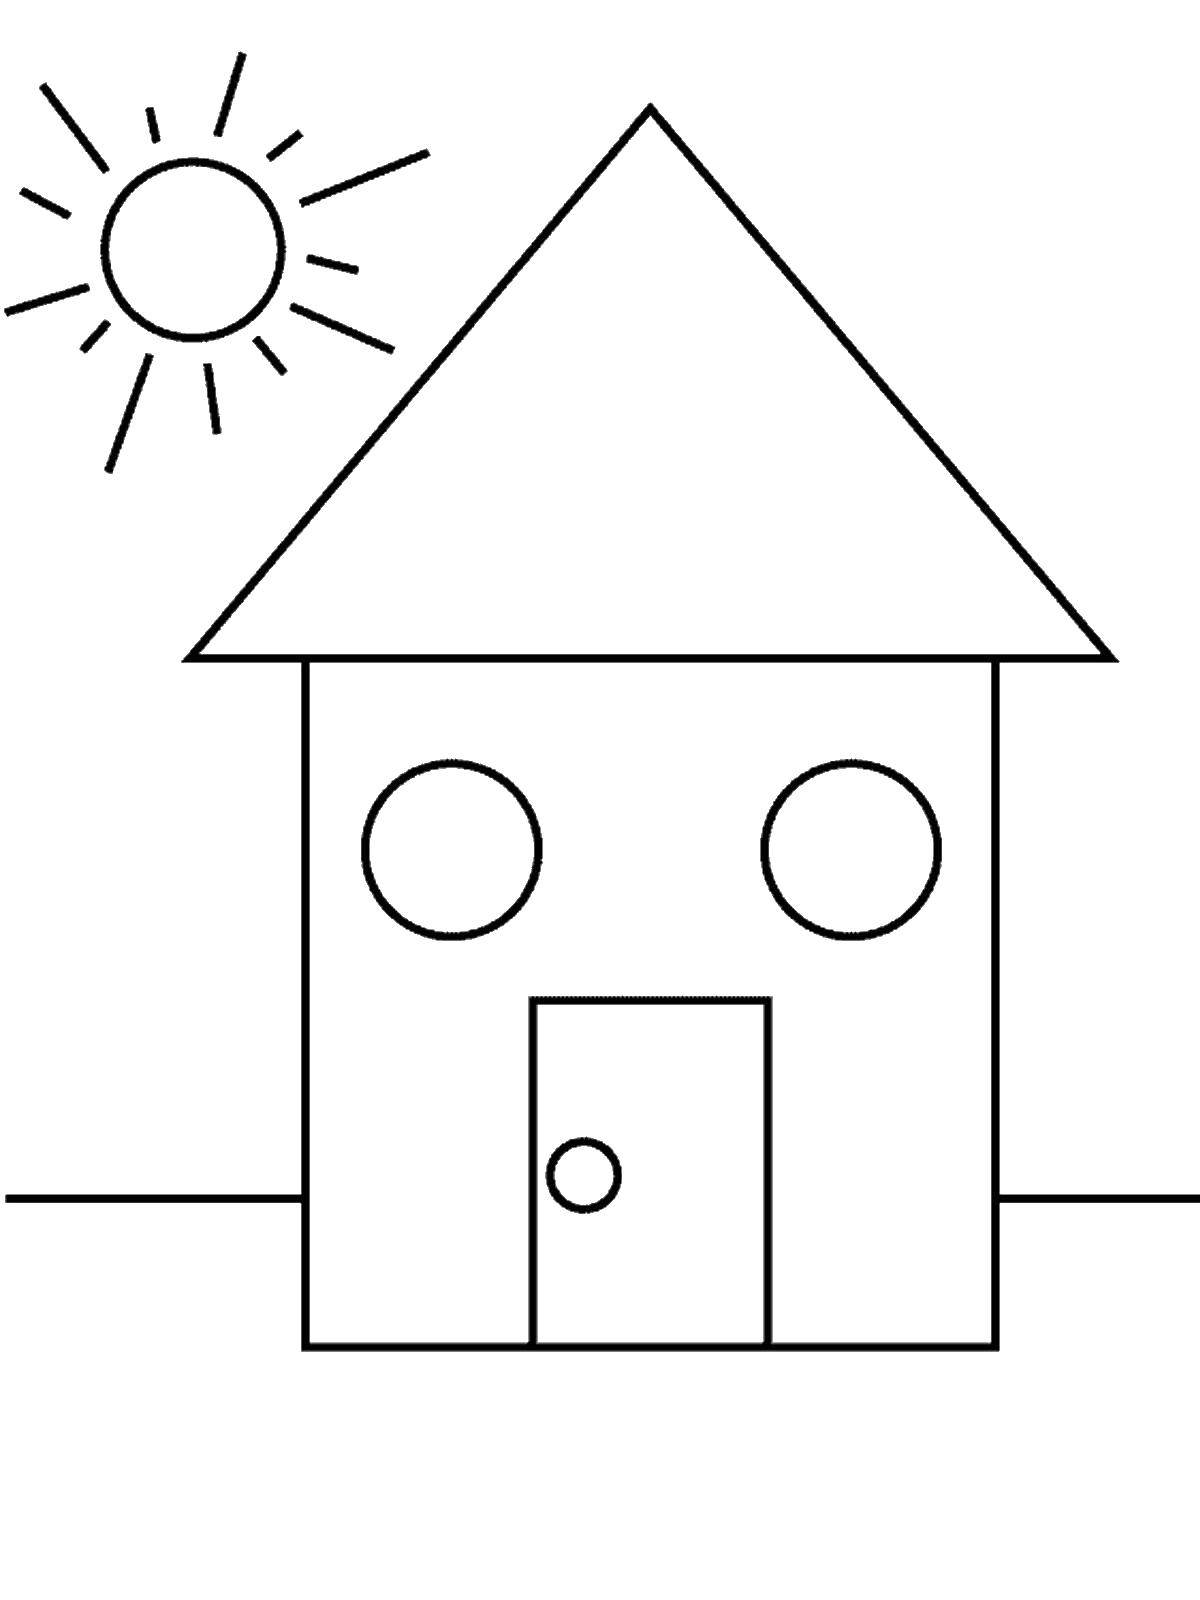 Название: Раскраска Домик и солнце. Категория: раскраски из фигур. Теги: дом, солнце.